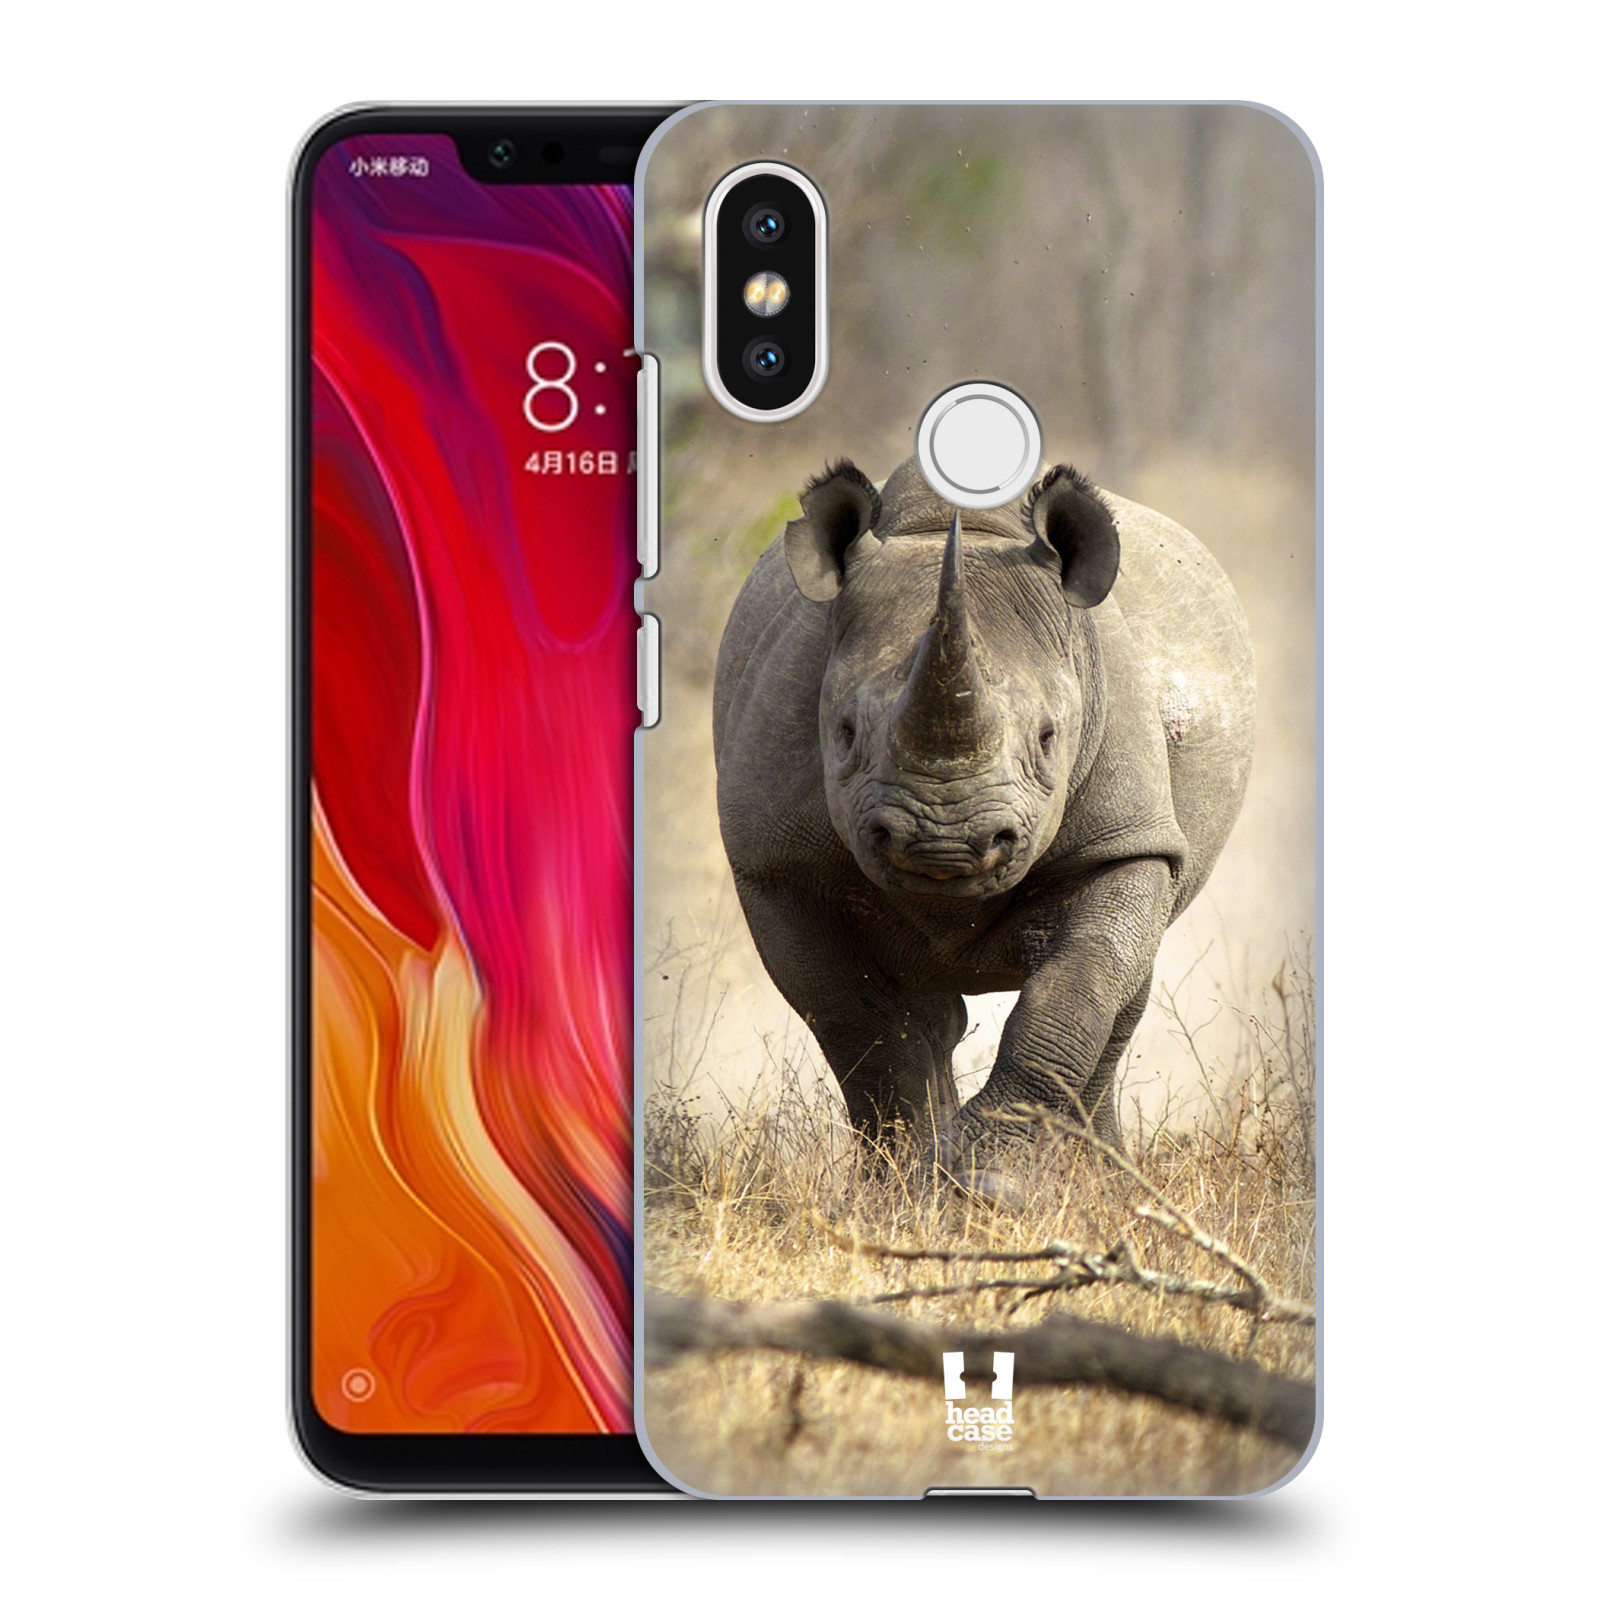 HEAD CASE plastový obal na mobil Xiaomi Mi 8 vzor Divočina, Divoký život a zvířata foto AFRIKA BĚŽÍCÍ NOSOROŽEC